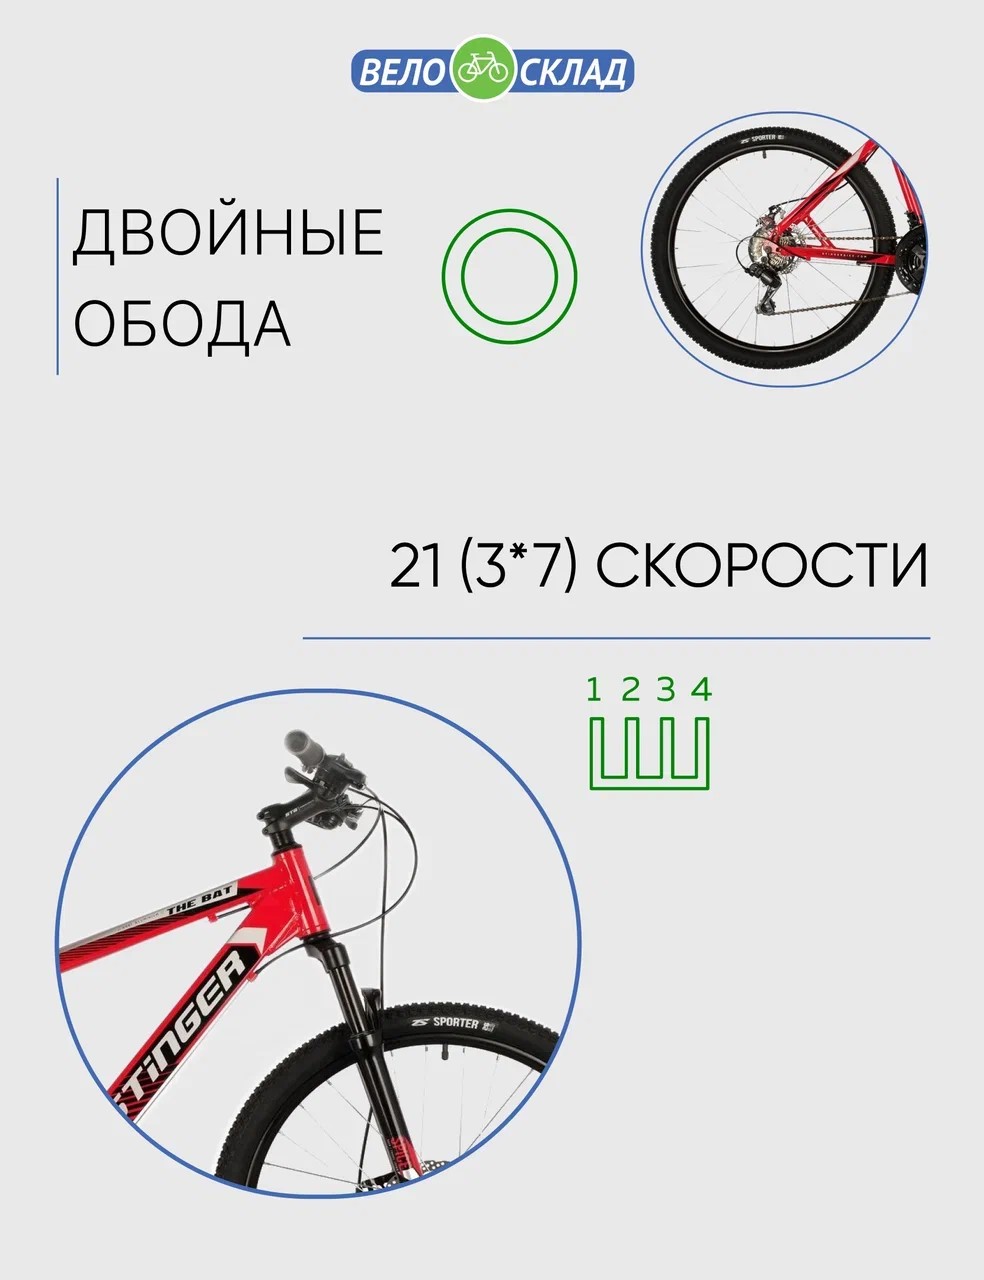 Горный велосипед Stinger Bat 26, год 2021, цвет Красный, ростовка 18